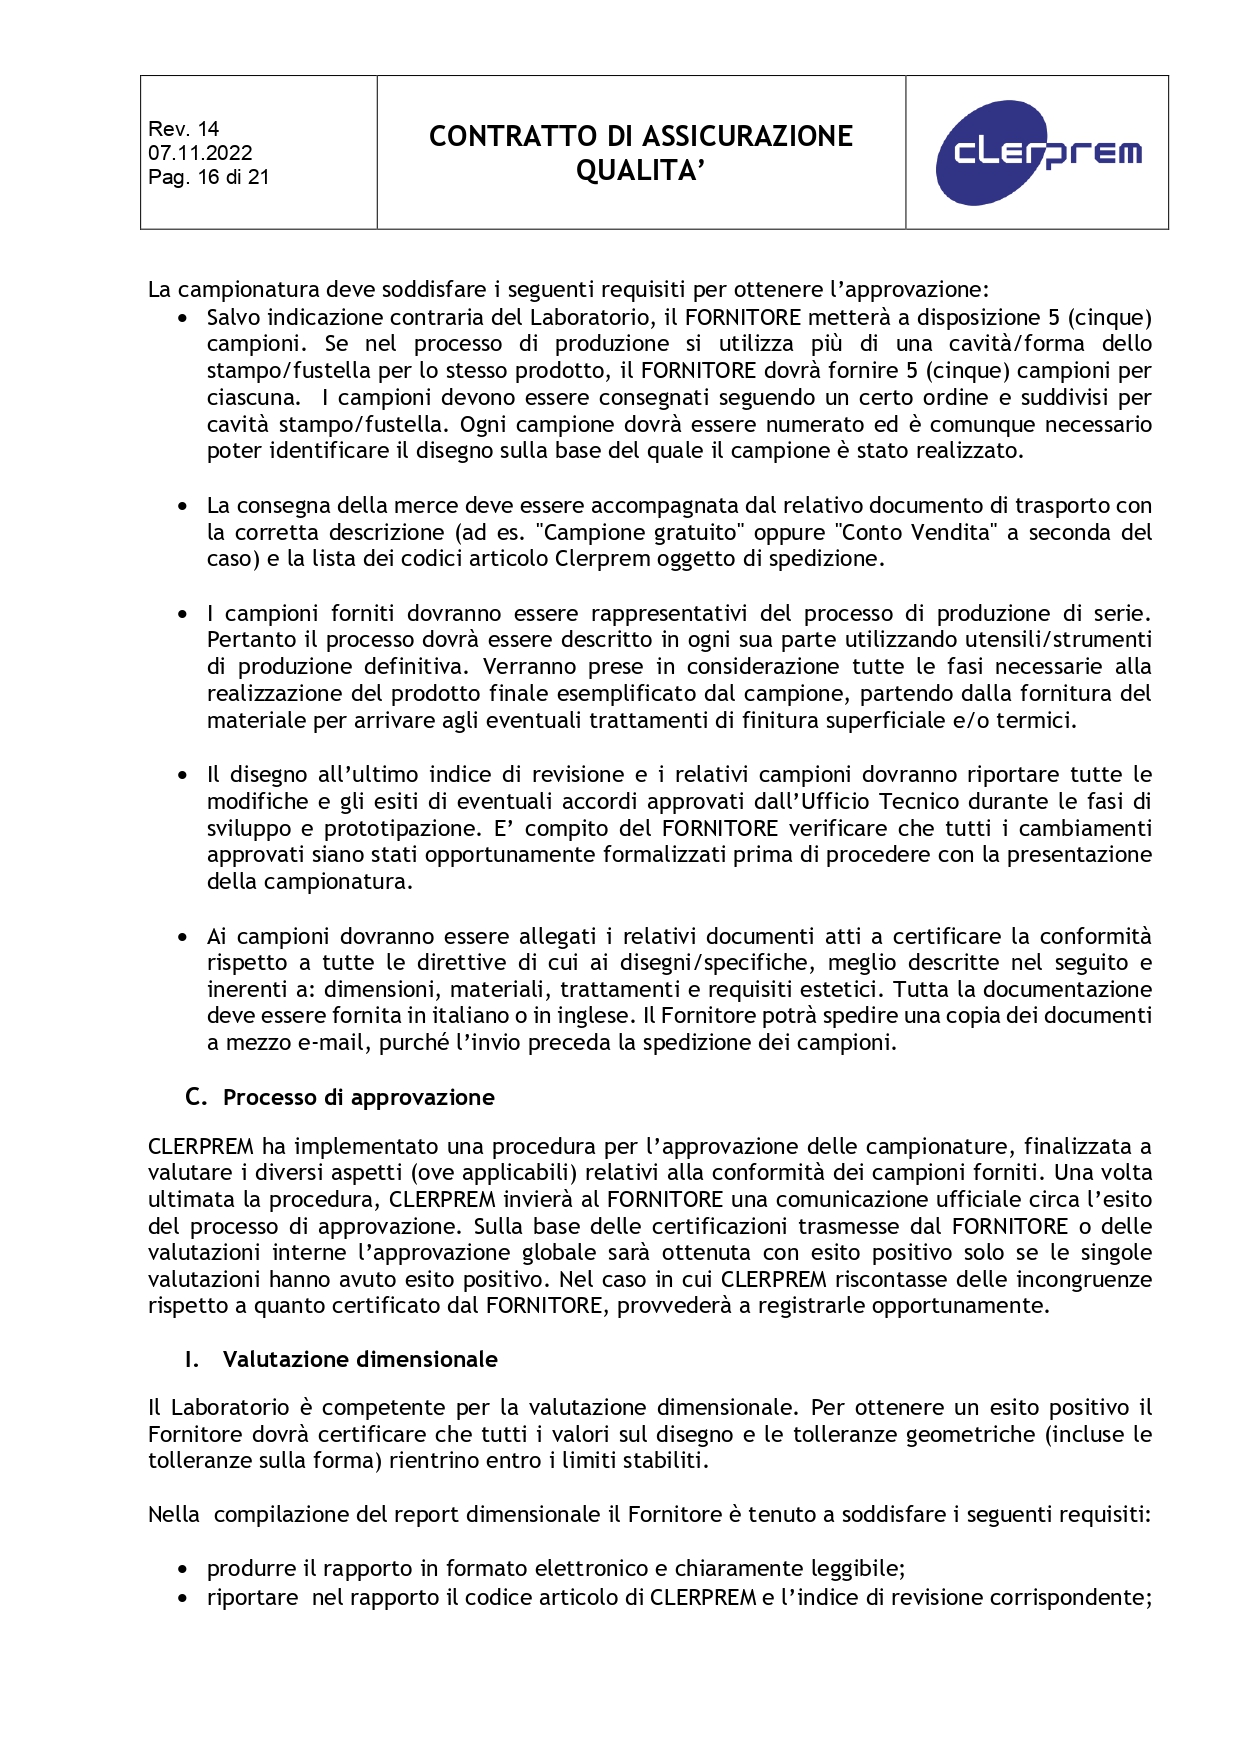 Accordo di Assicurazione Qualità rev. 14_page-0016